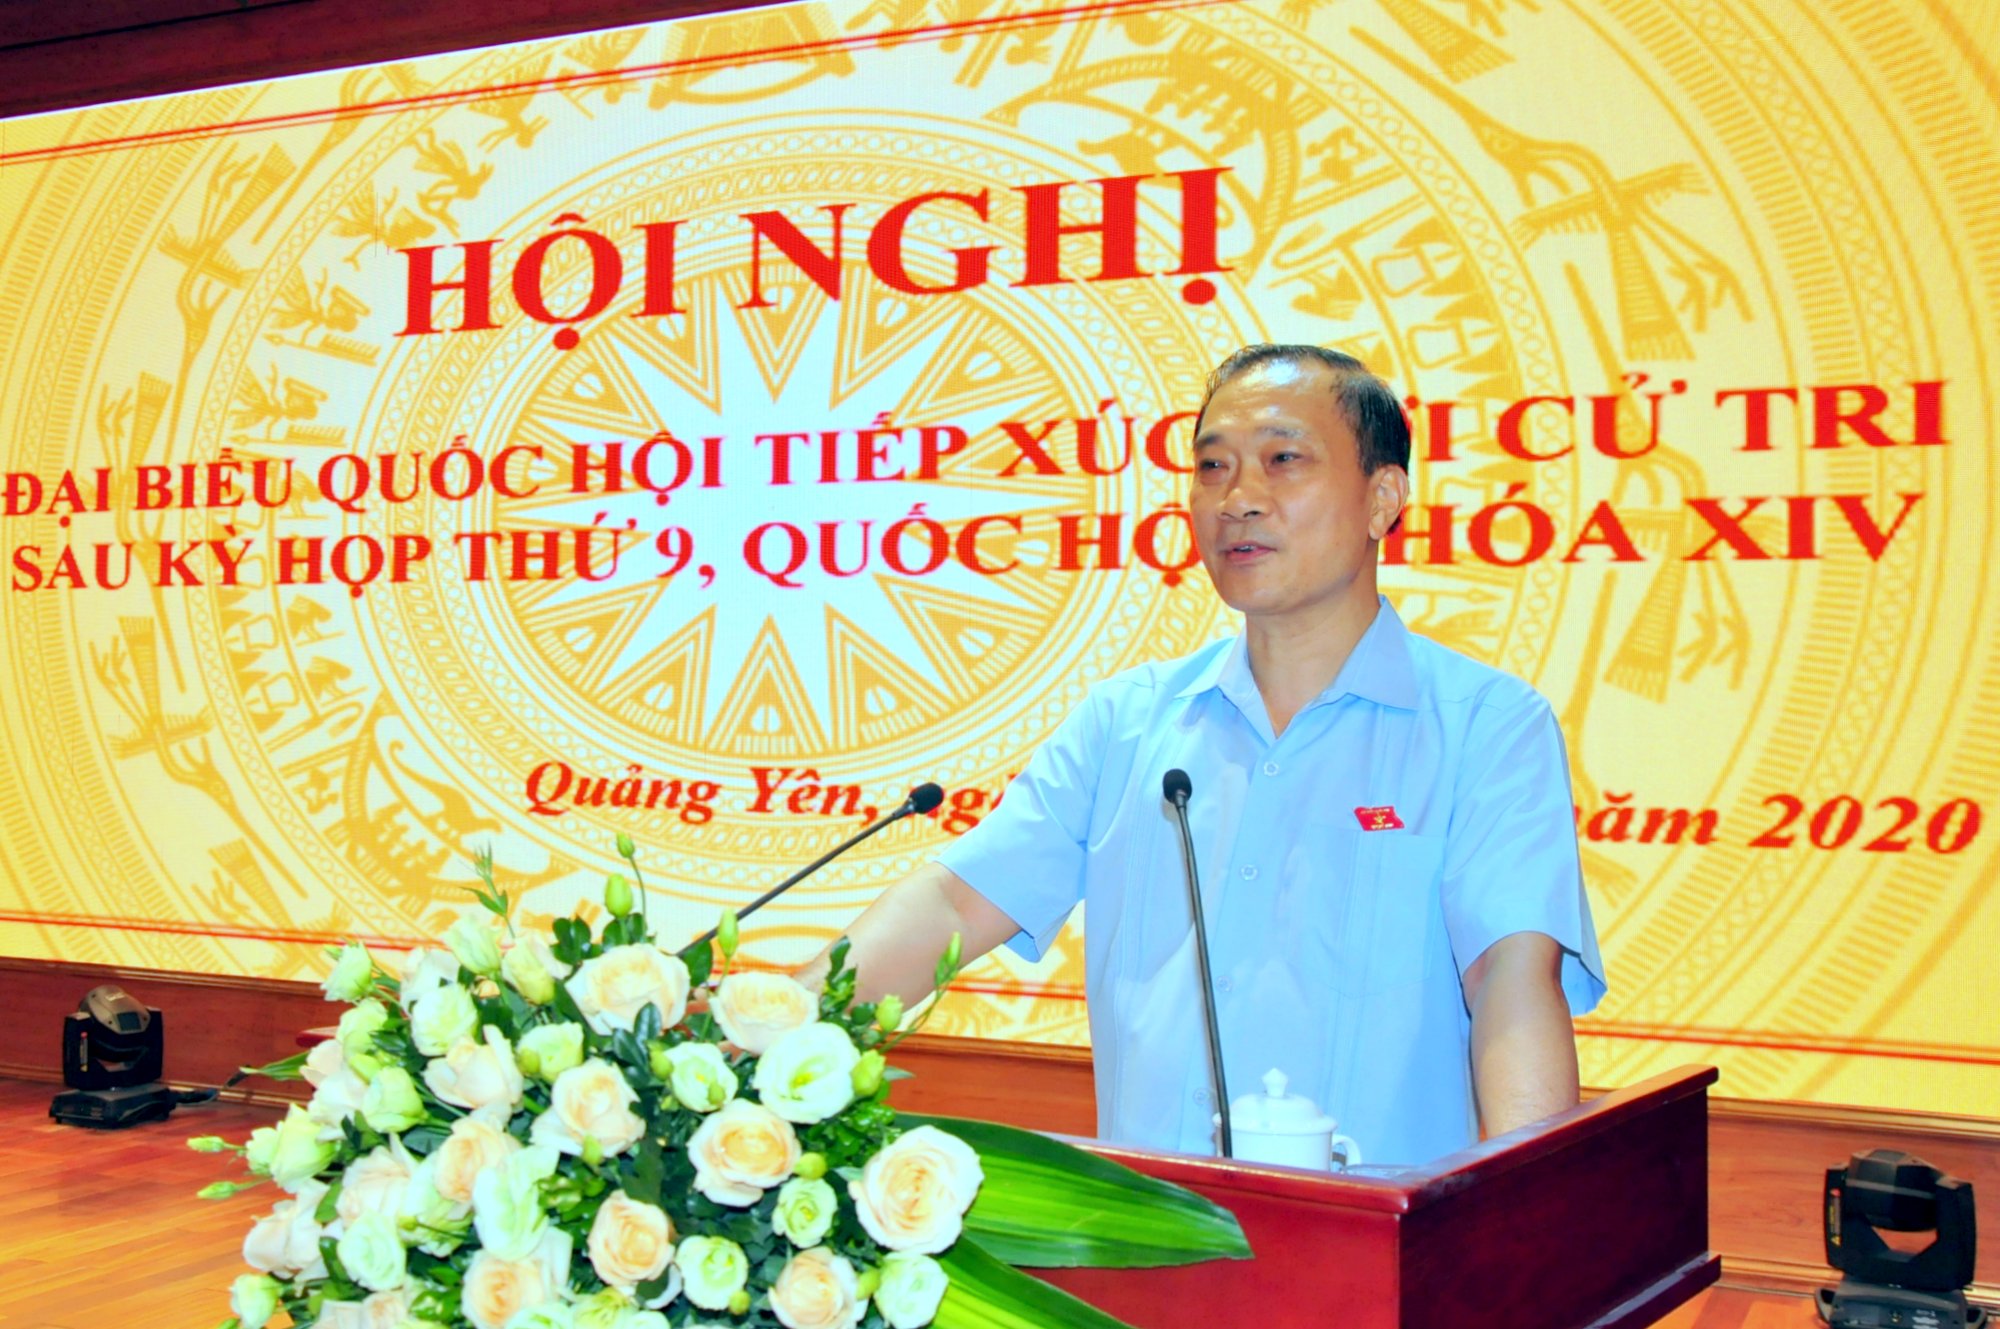 ĐBQH Vũ Hồng Thanh thông tin nhanh tới cử tri TX Quảng Yên kết quả của Kỳ họp thứ 9, Quốc hội khóa XIV và trực tiếp giải đáp các ý kiến, kiến nghị của cử tri.